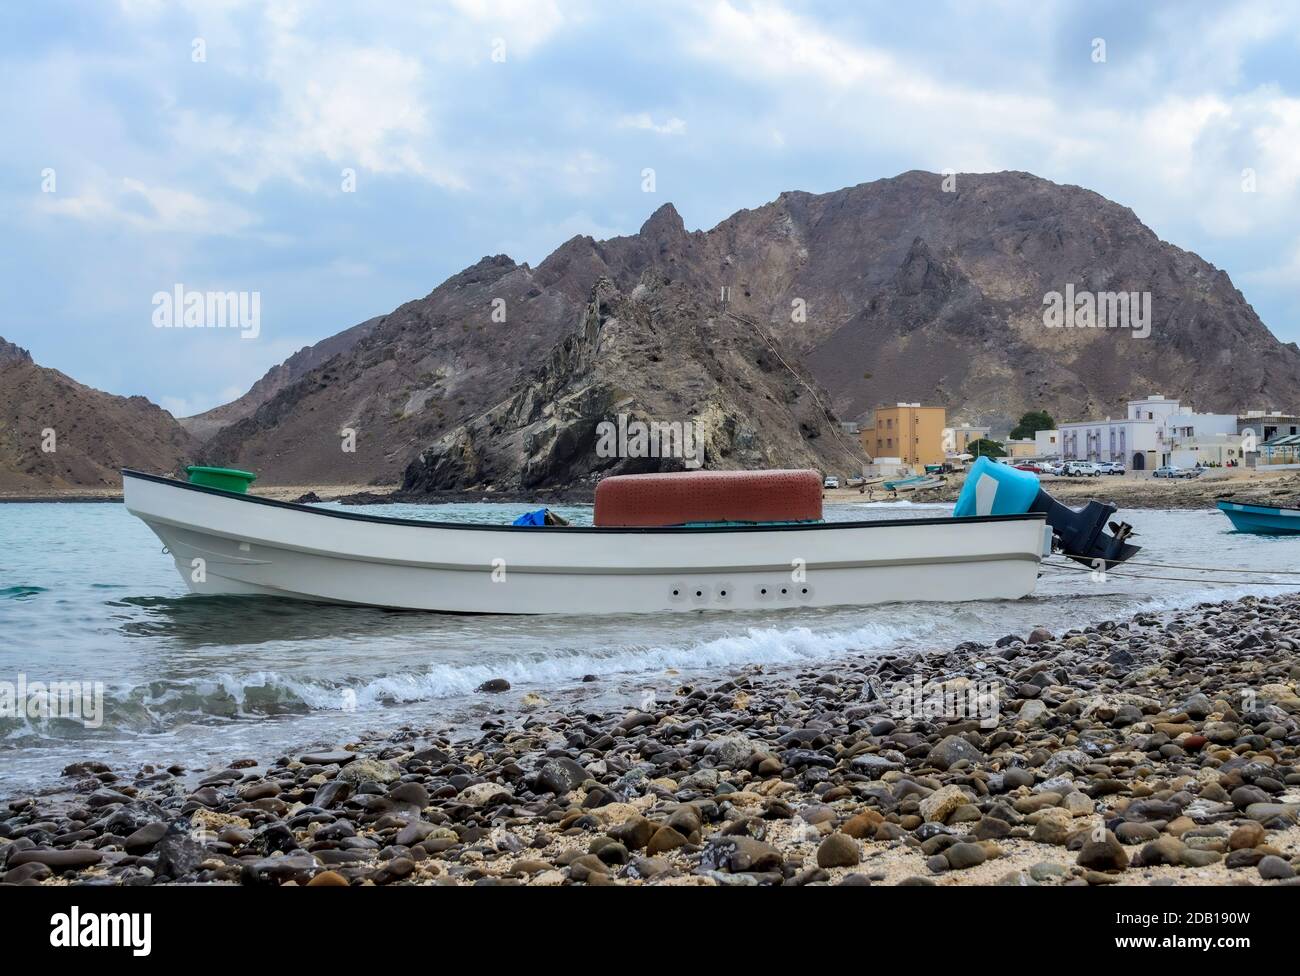 Petit bateau de pêche amarré sur la plage de Darsait, Muscat, Oman. Montagnes et village de pêcheurs en arrière-plan Banque D'Images